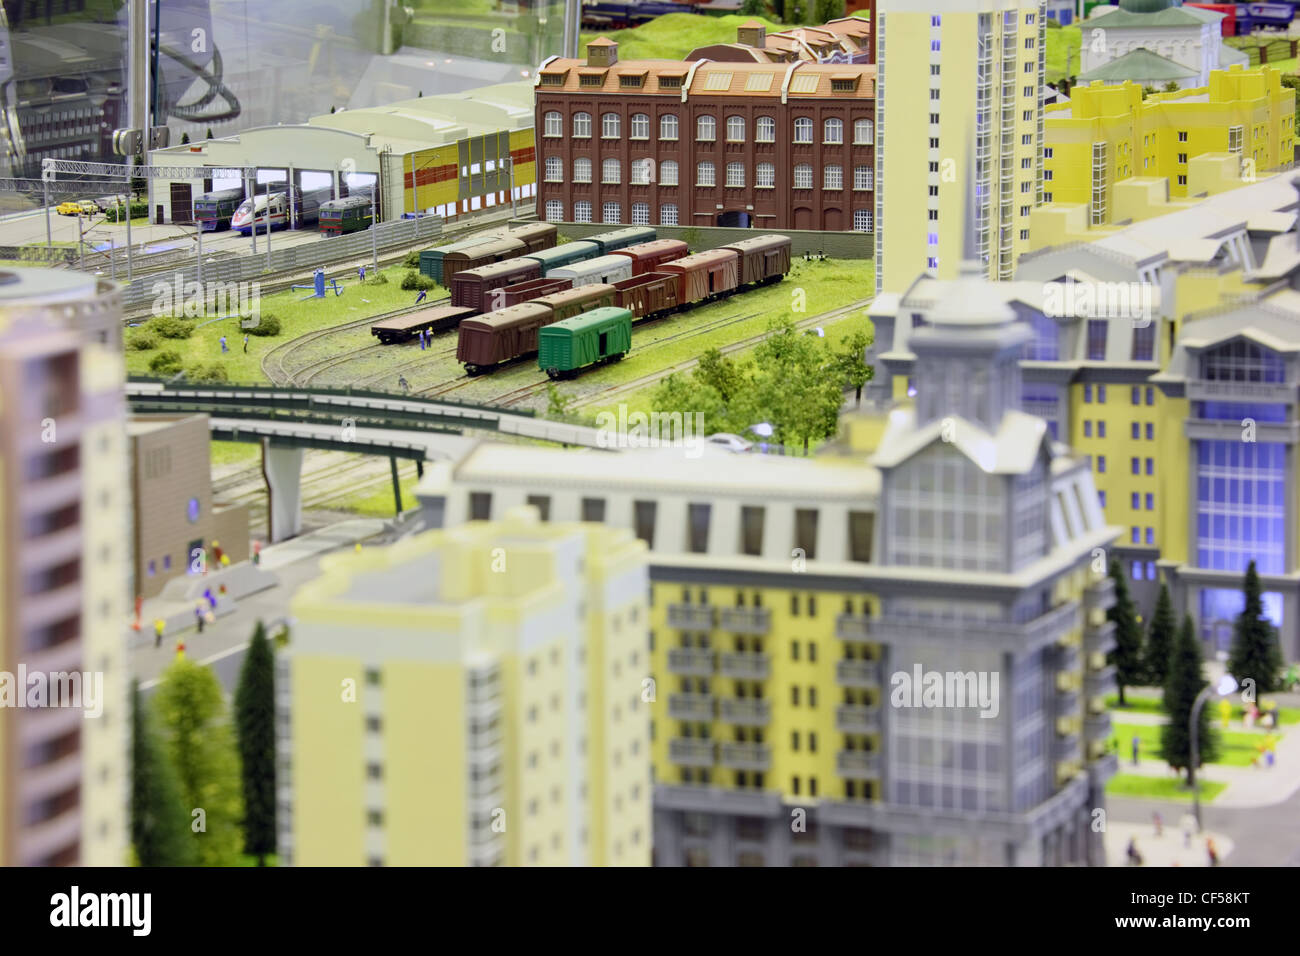 Modello di stazione ferroviaria. railroad, treni, edifici e altre costruzioni. concentrarsi sui tre piani di un palazzo nella parte superiore dell'immagine. Foto Stock